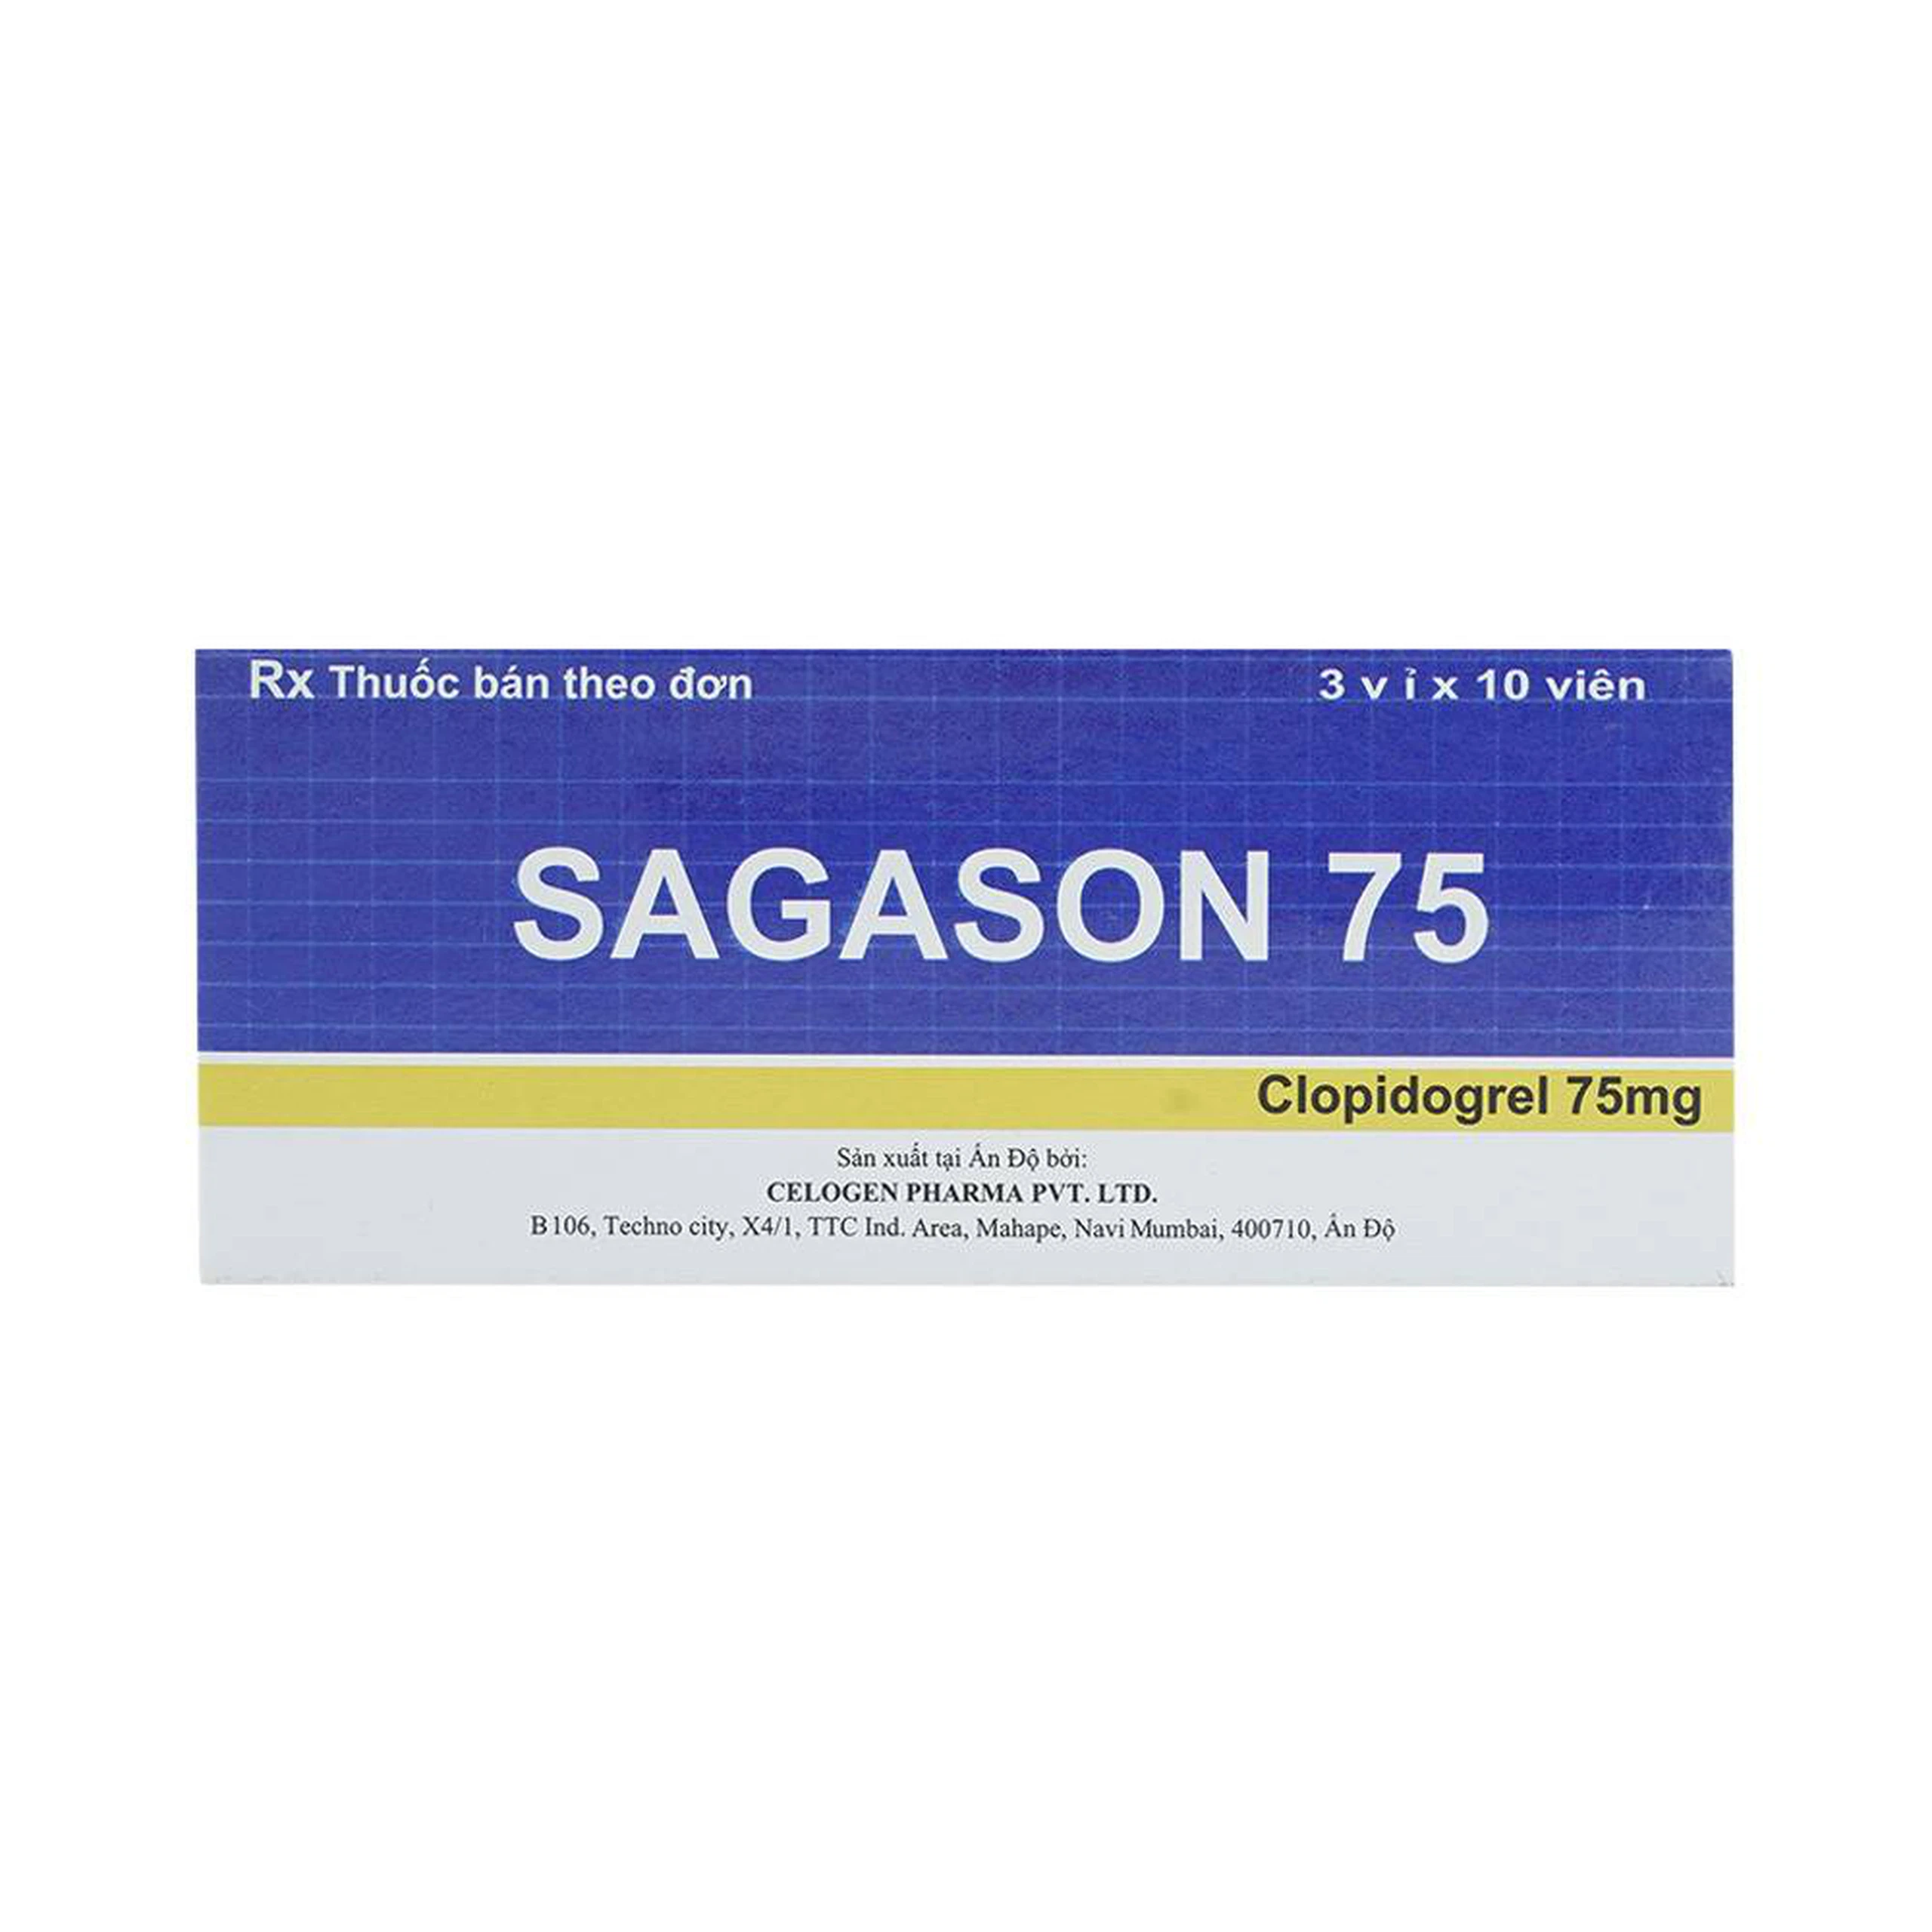 Thuốc Sagason 75 Celogen Pharma điều trị nhồi máu cơ tim, đột quỵ (3 vỉ x 10 viên)